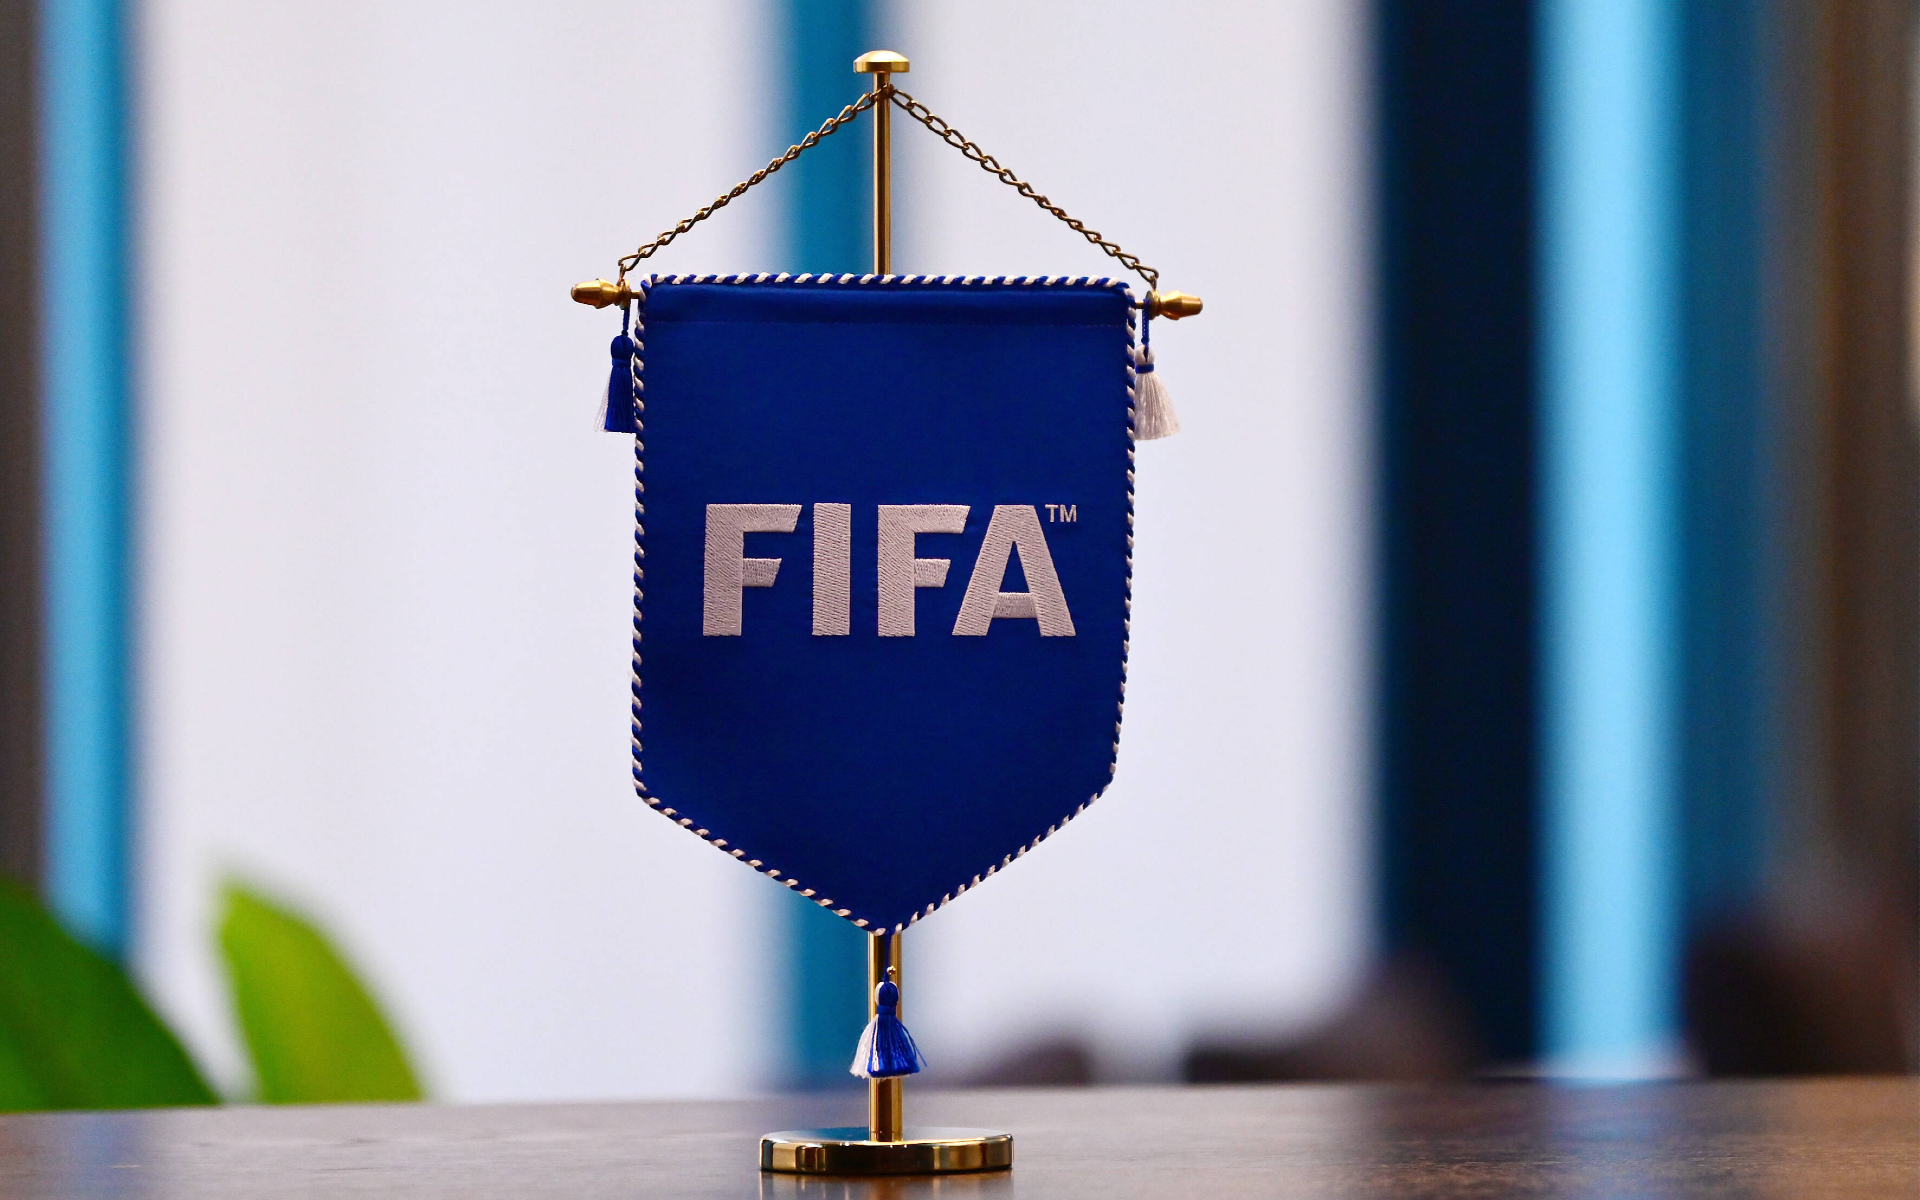 ФИФА не исключил Российский футбольный союз из организации 